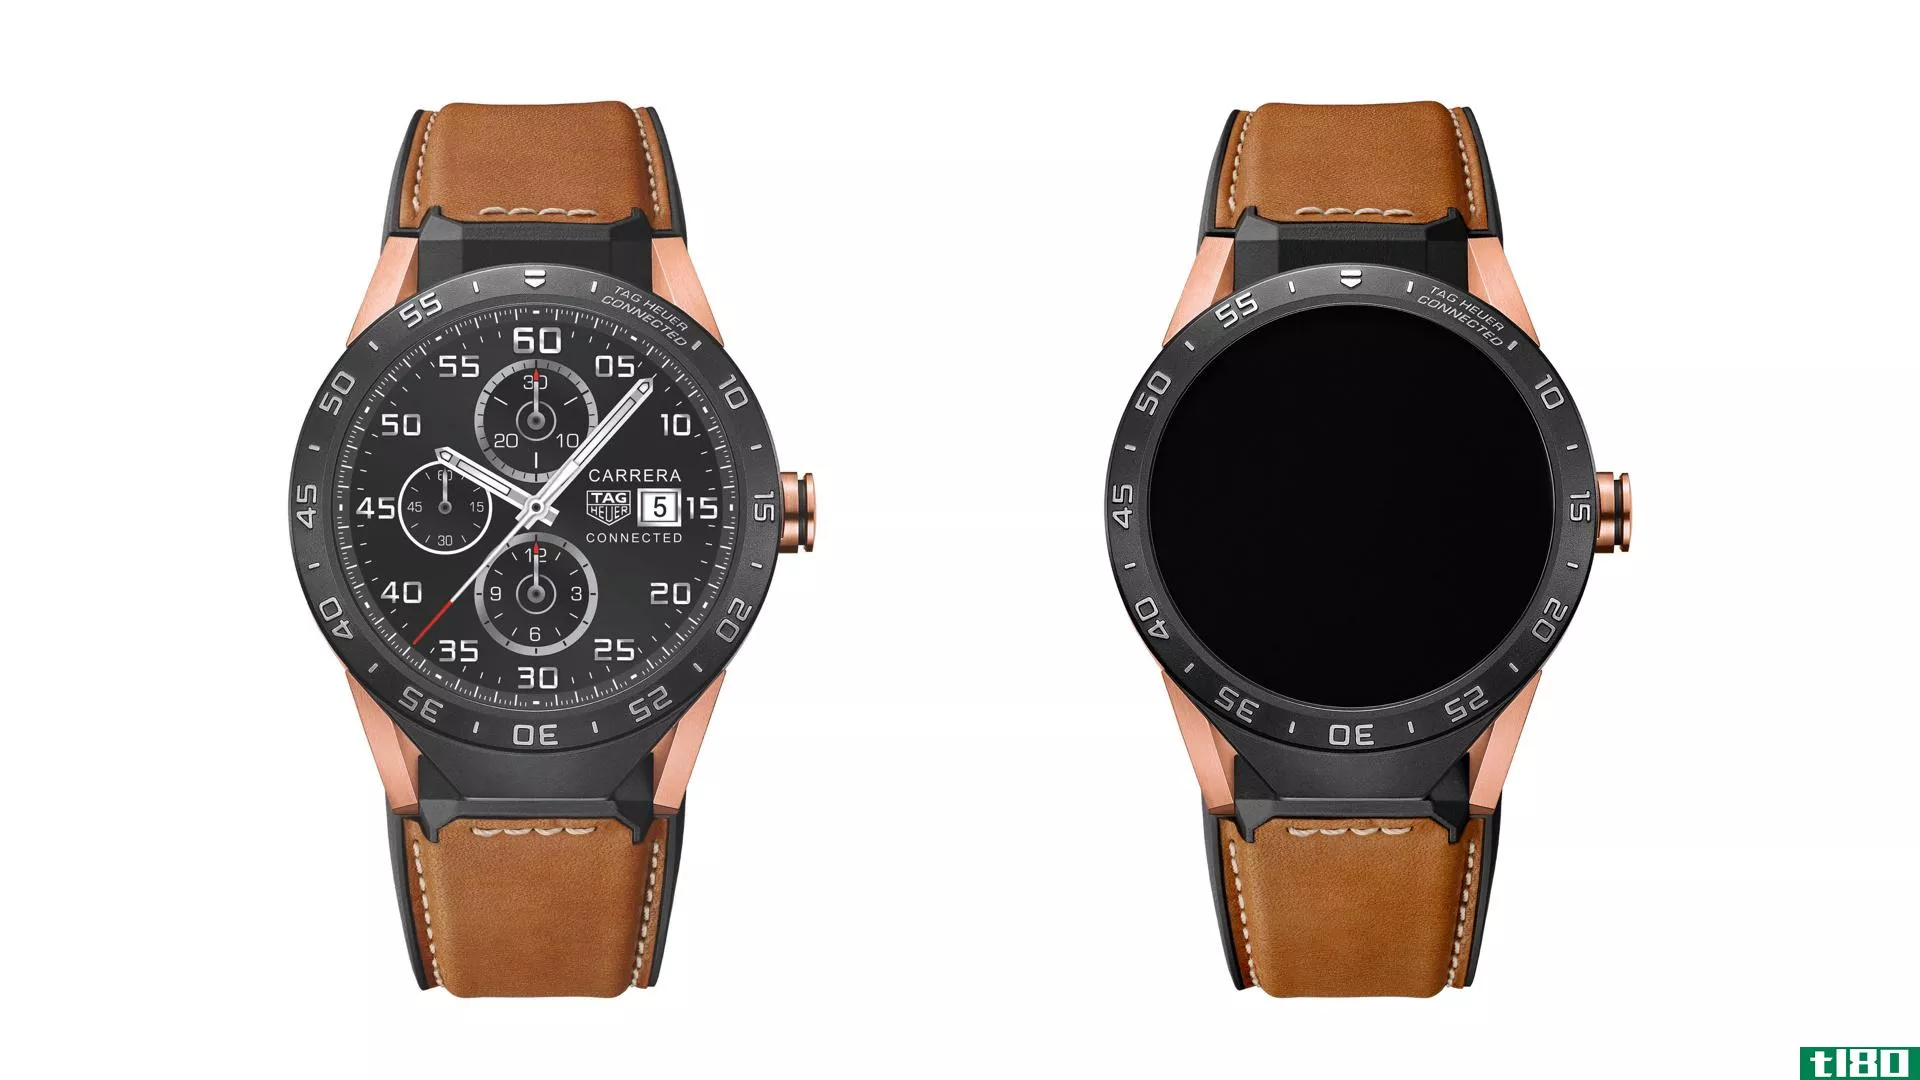 豪雅（tag heuer）售价9900美元的智能手表由纯金玫瑰制成